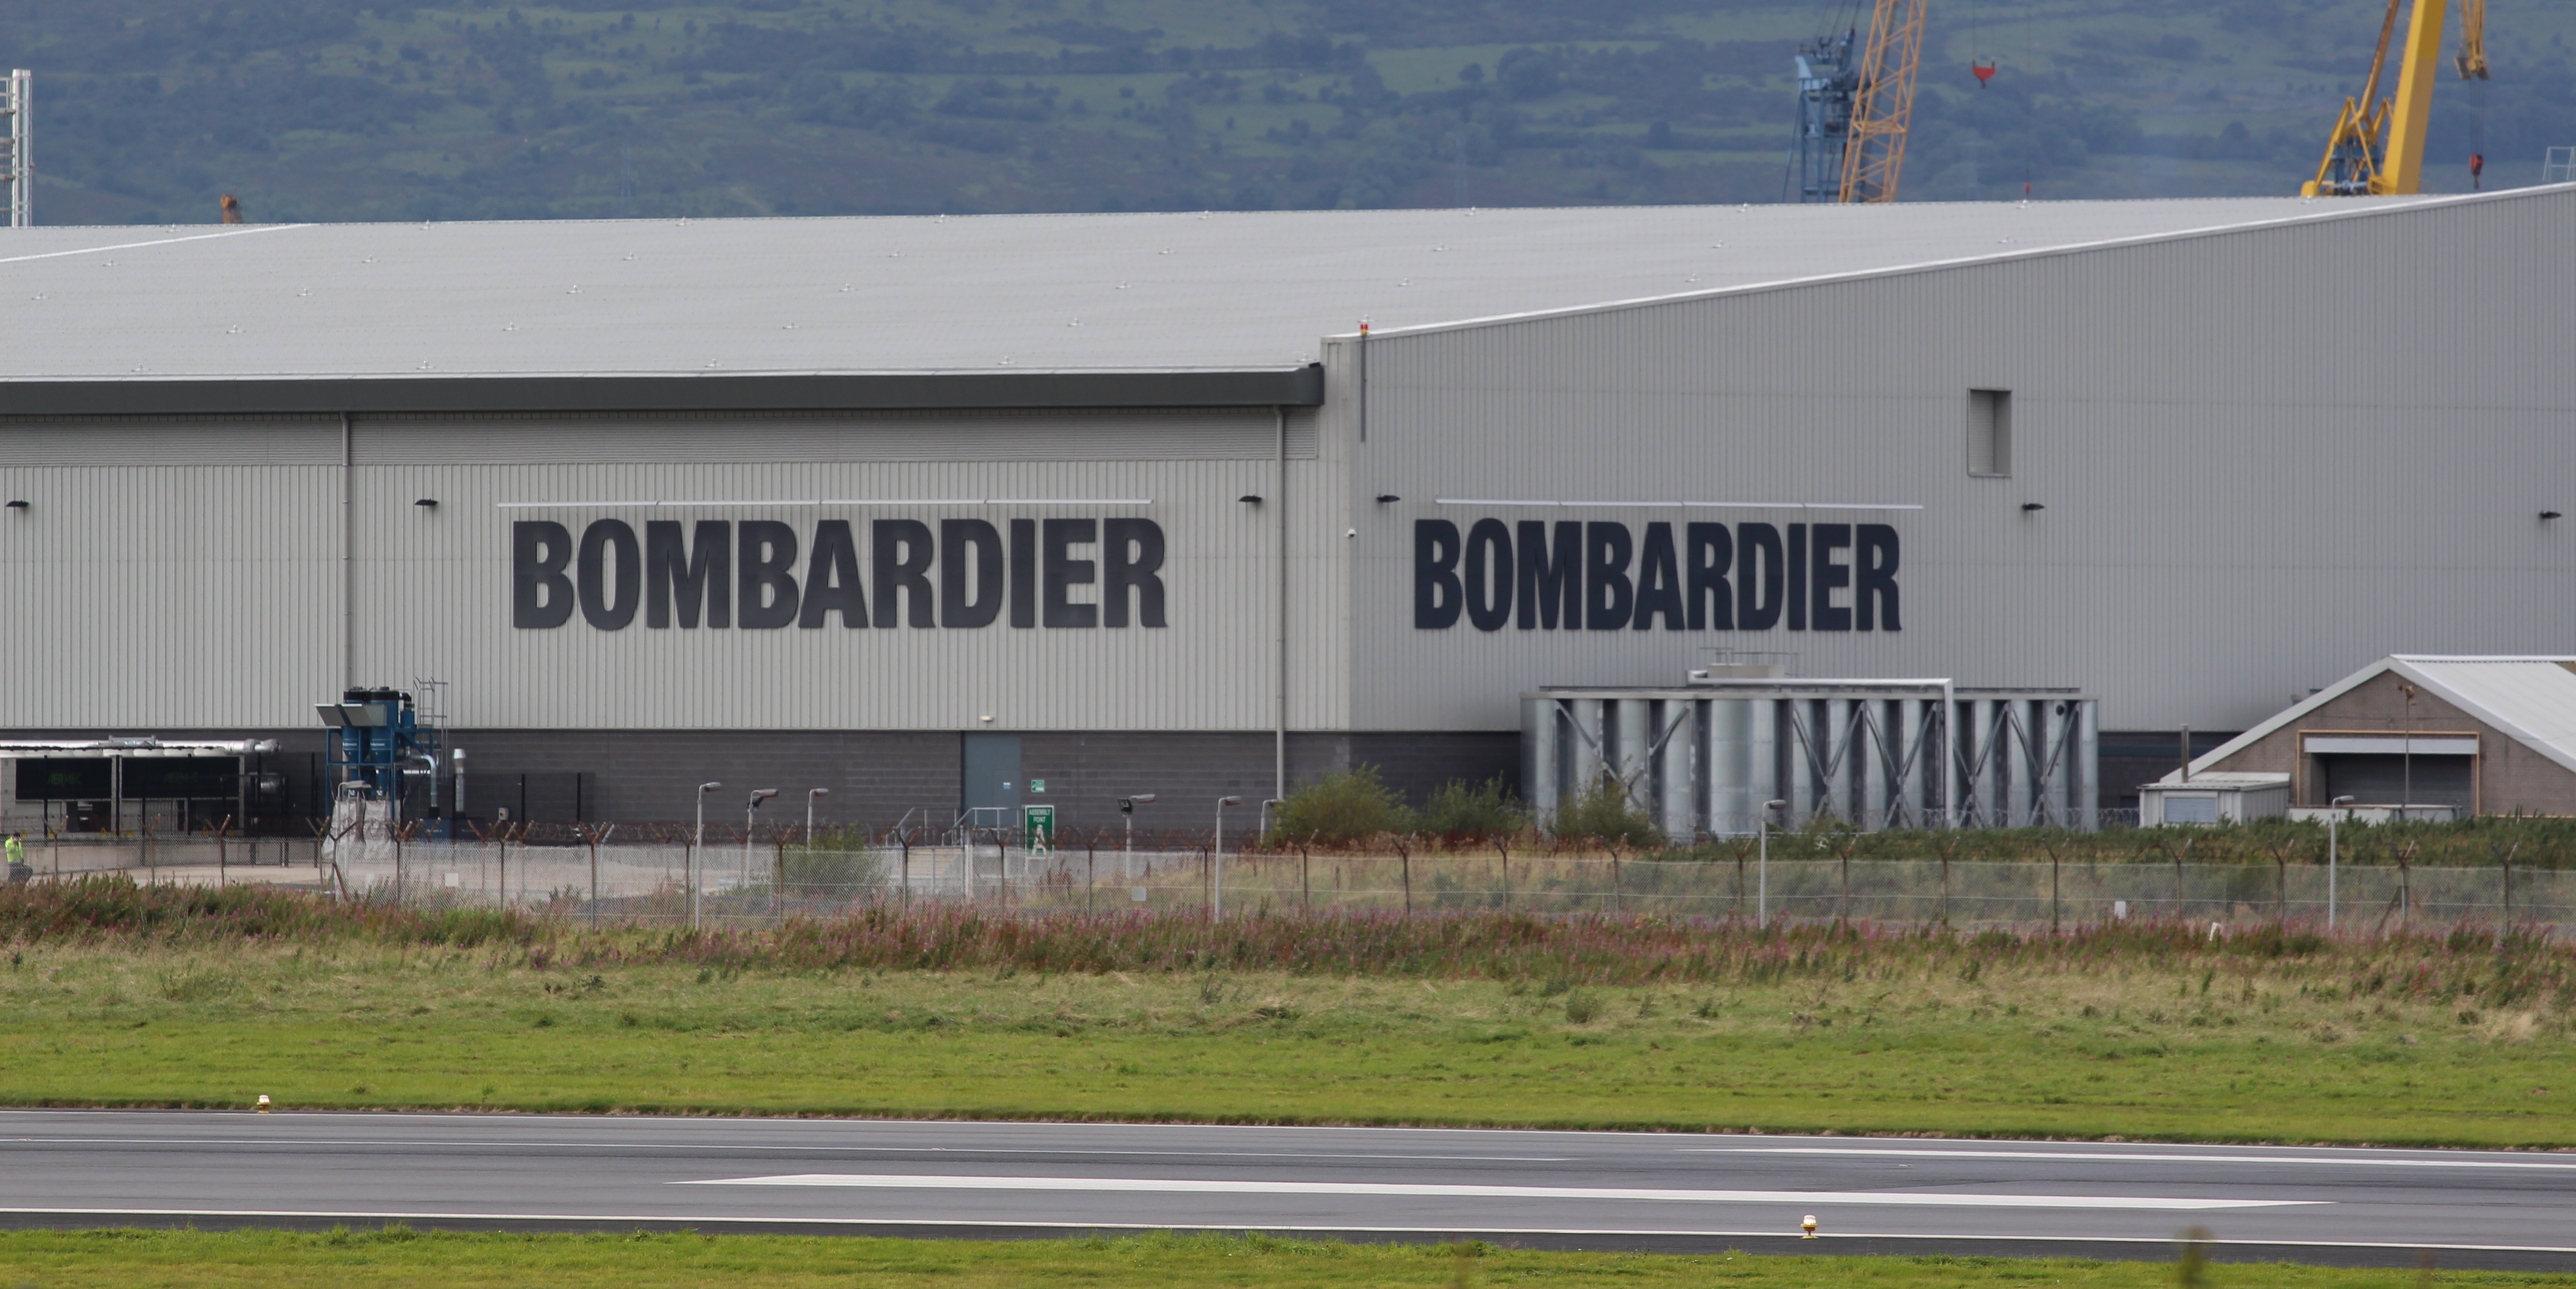 D’fhéadfadh comhlacht Gaeltachta a bheith thíos le haighneas Bombardier i mBéal Feirste